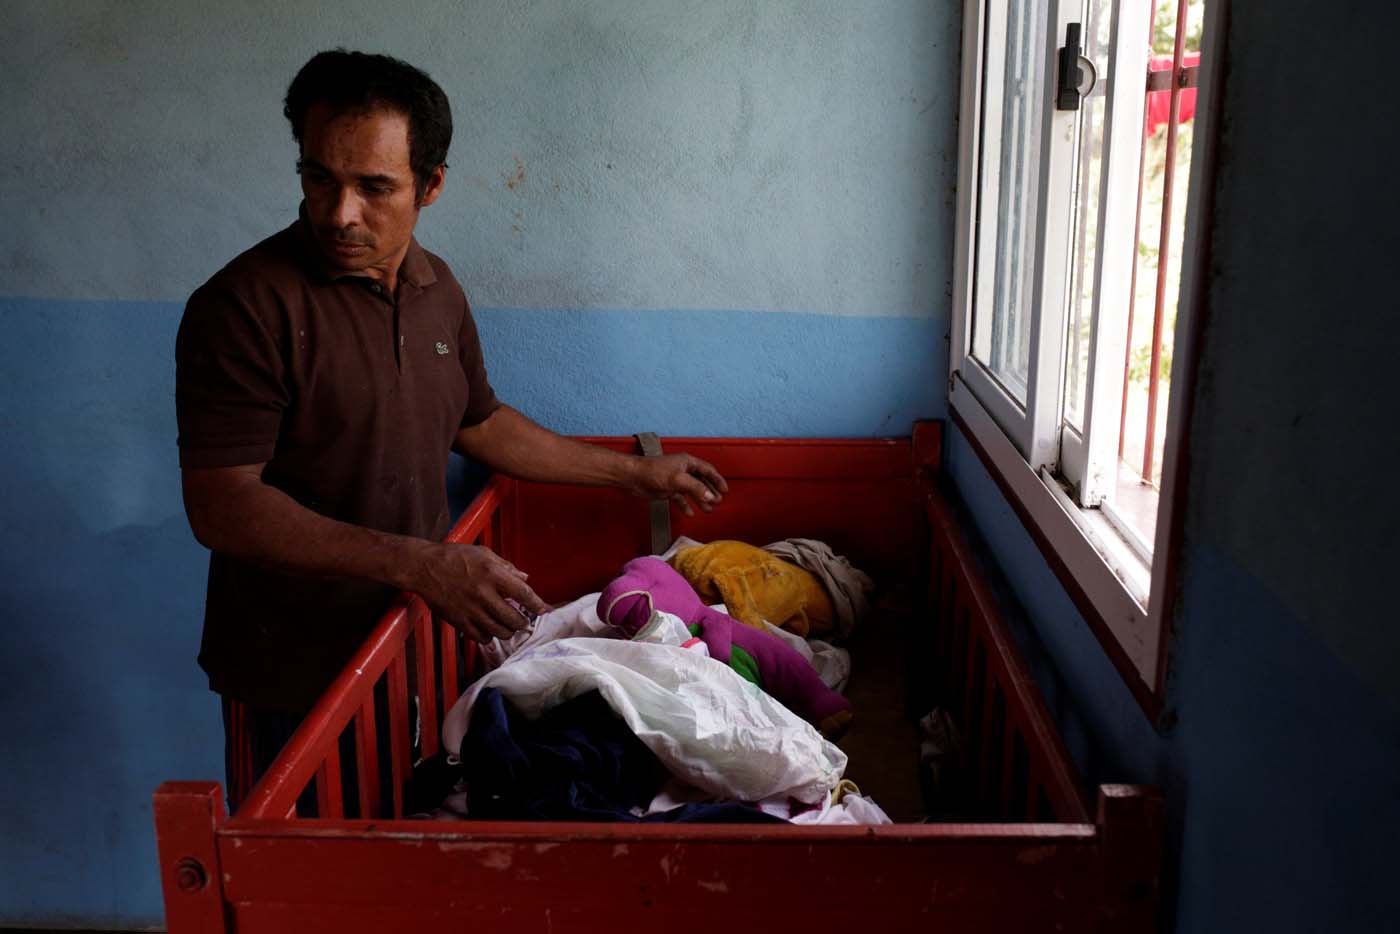 La difteria lleva cuatro víctimas mortales confirmadas en hospital de Ciudad Guayana